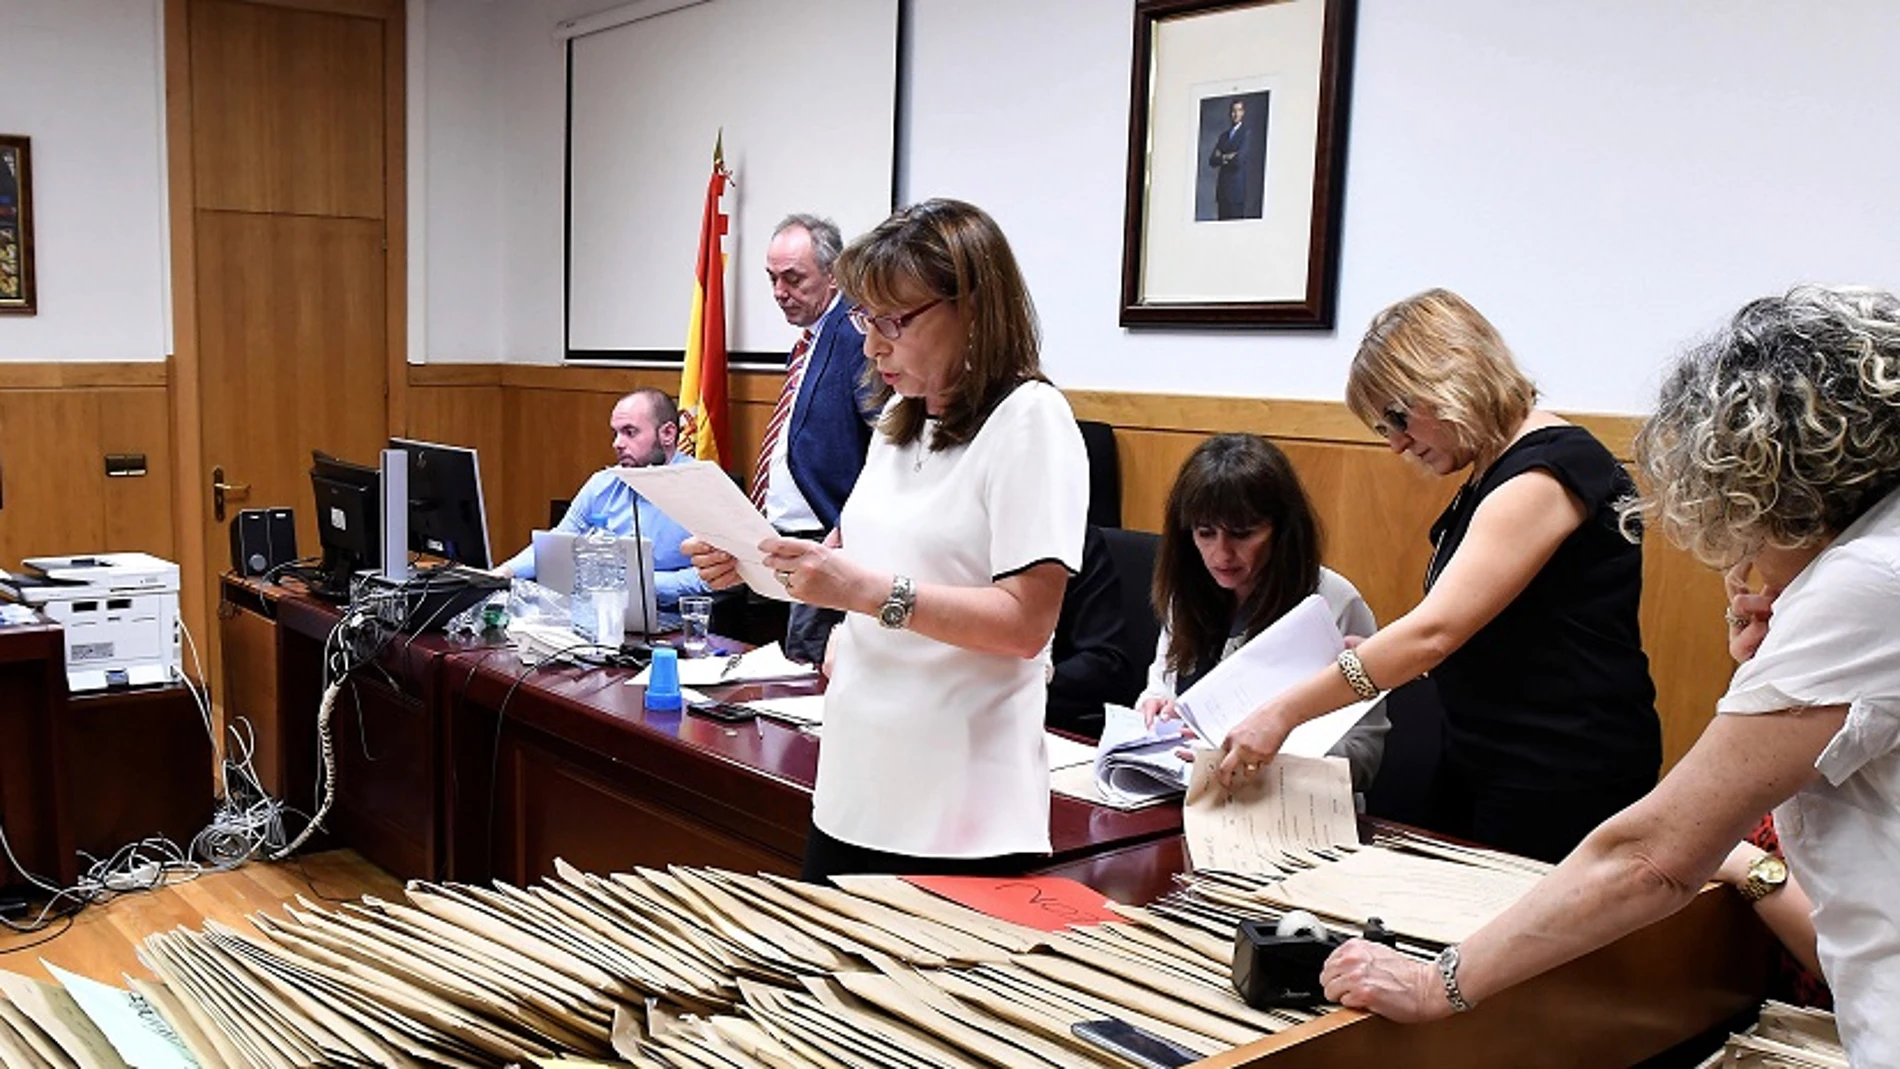 Imagen de un momento del recuento oficial realizado por la Junta Electoral de las elecciones municipales de León